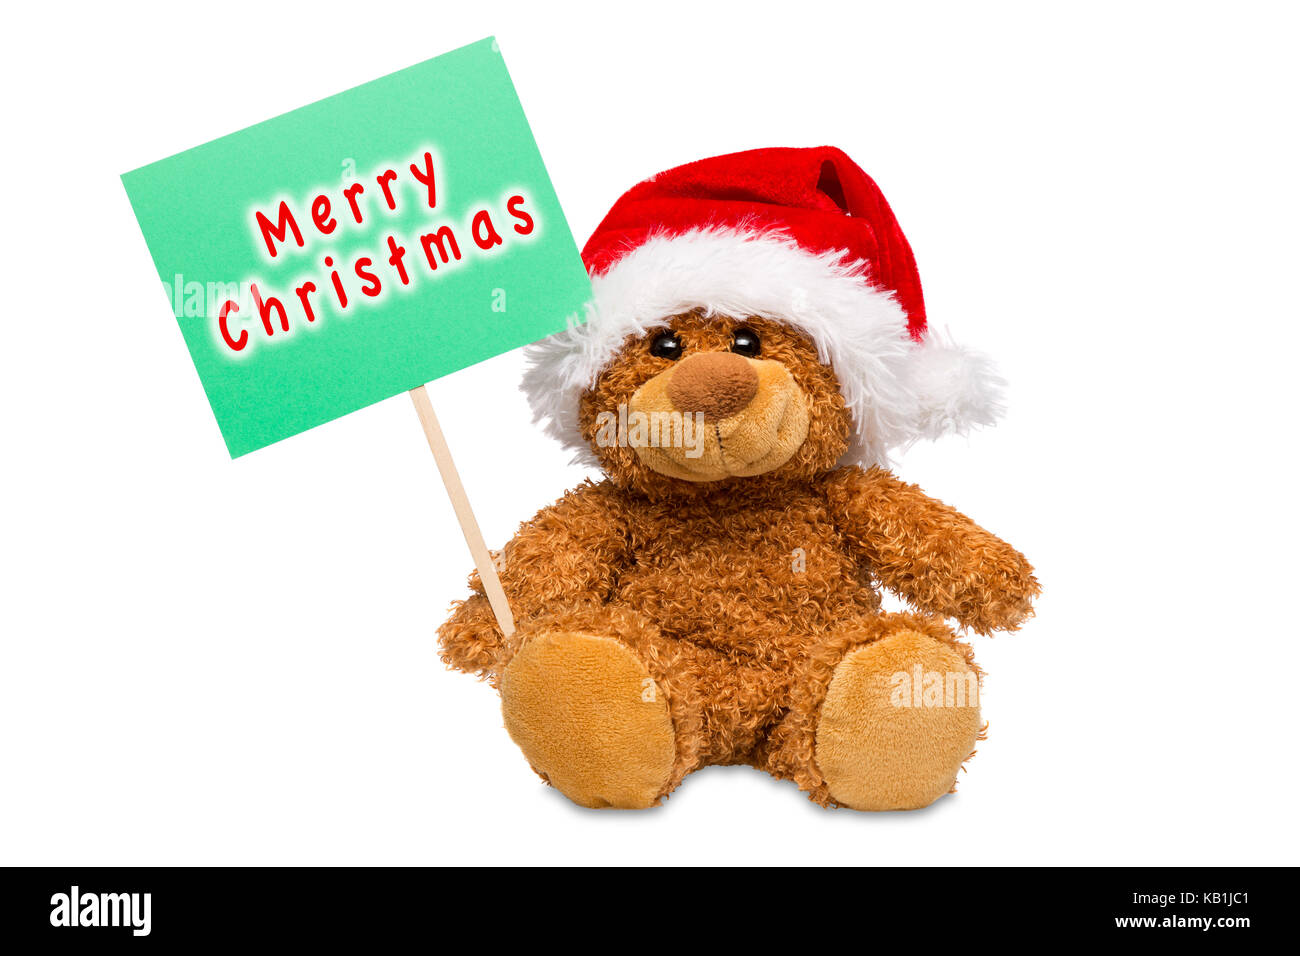 Un orsacchiotto di peluche che indossa un cappello da Babbo Natale tenendo un cartello con scritto buon natale scritto su di esso, isolata su uno sfondo bianco. Foto Stock